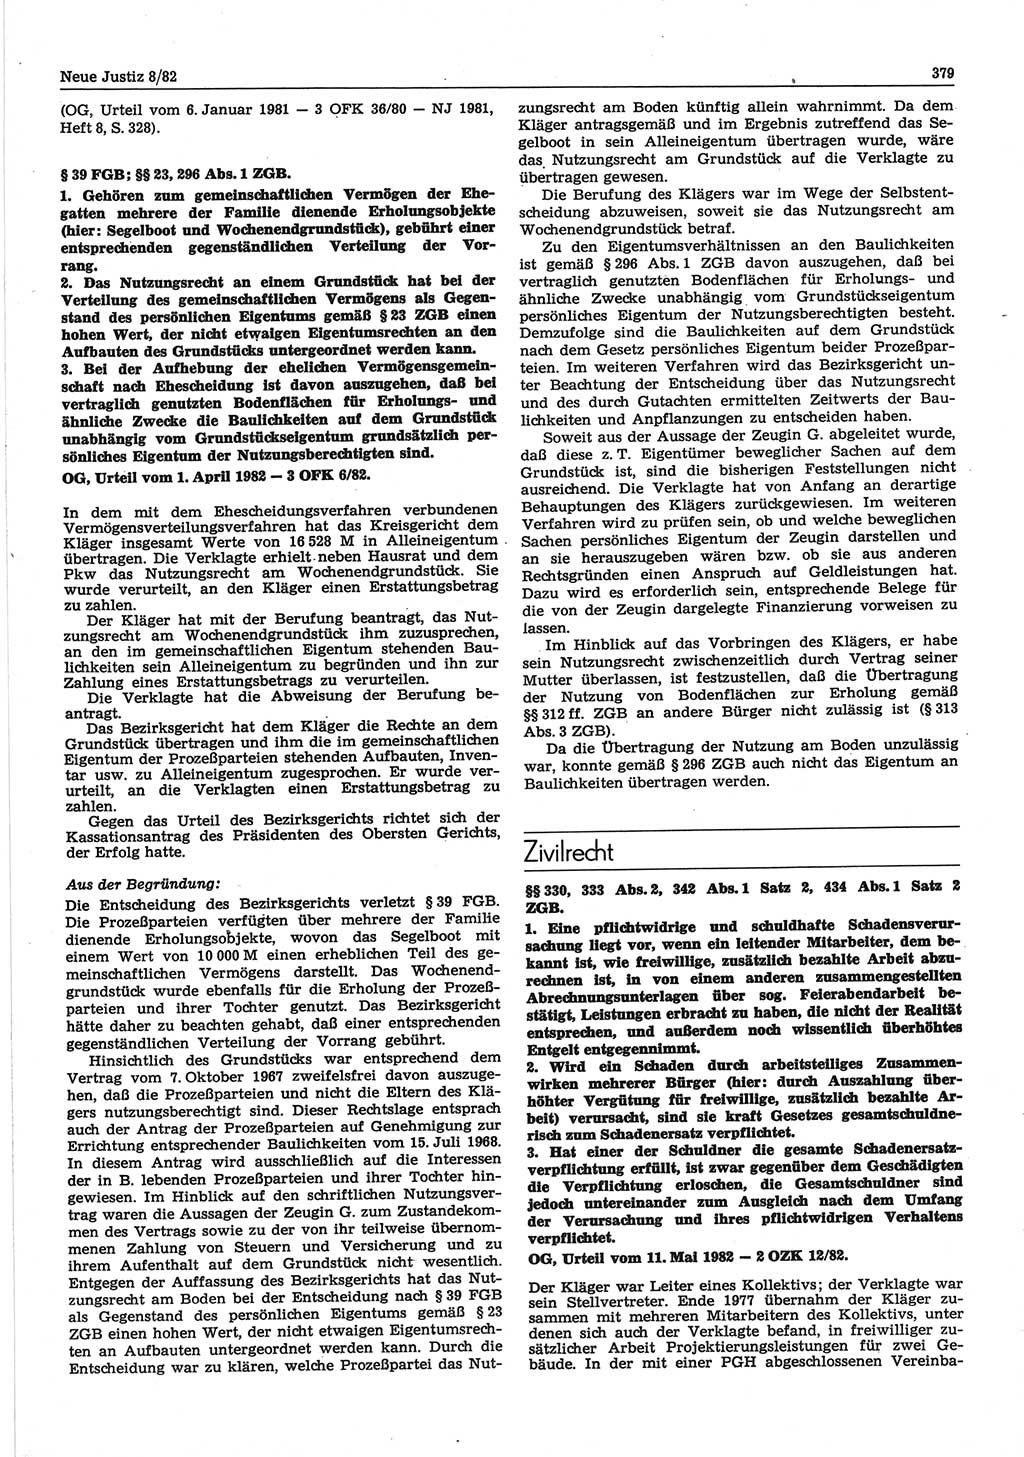 Neue Justiz (NJ), Zeitschrift für sozialistisches Recht und Gesetzlichkeit [Deutsche Demokratische Republik (DDR)], 36. Jahrgang 1982, Seite 379 (NJ DDR 1982, S. 379)